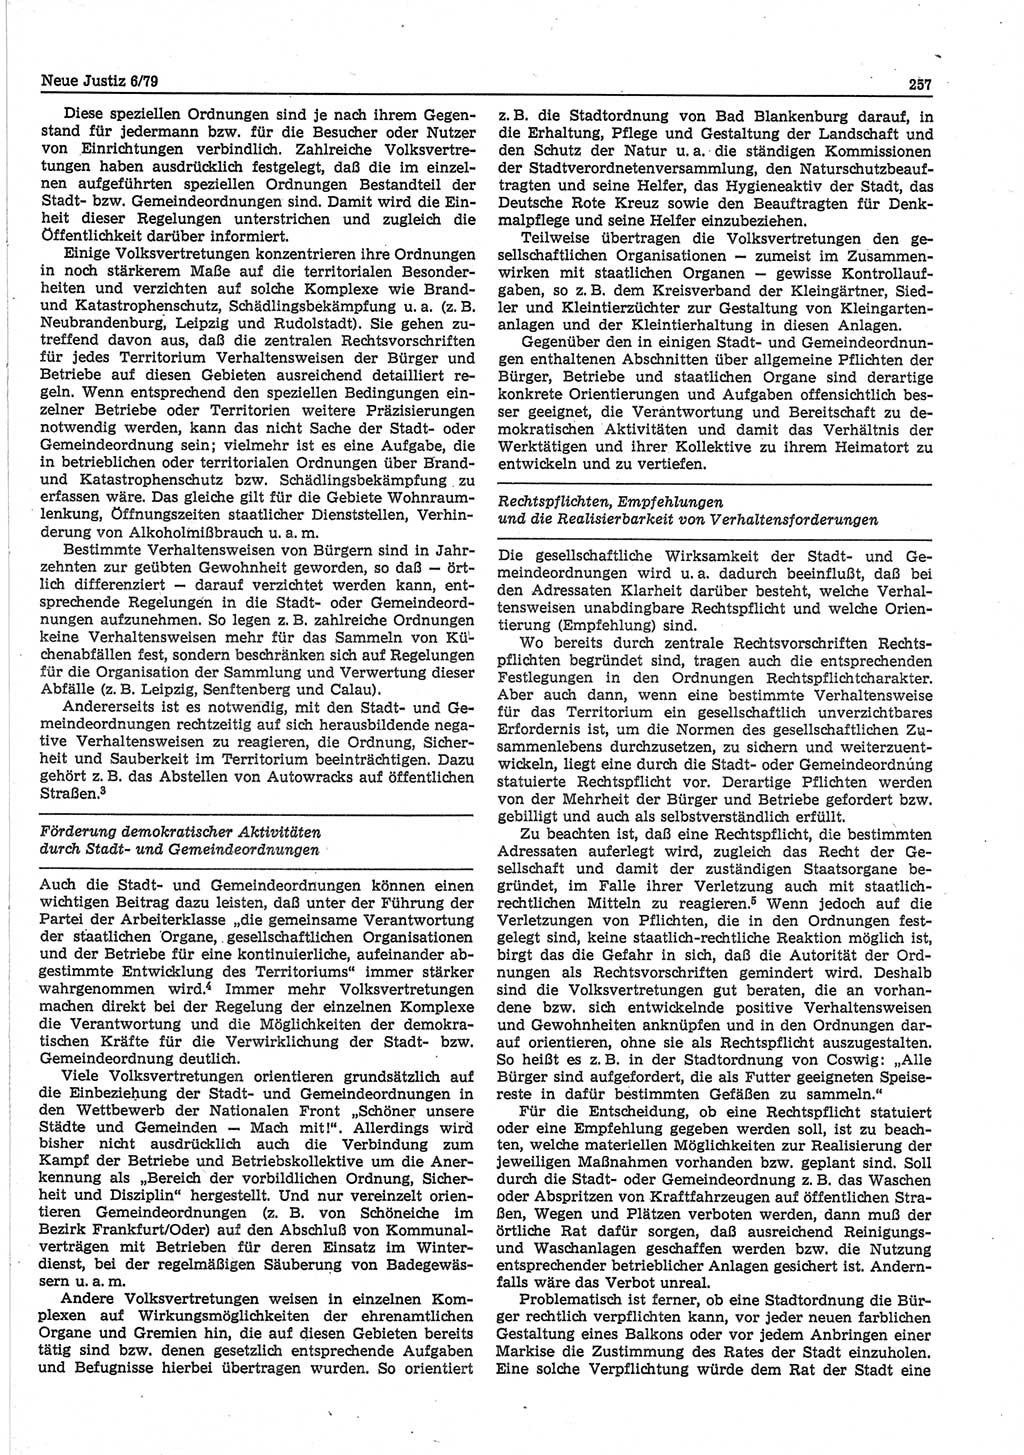 Neue Justiz (NJ), Zeitschrift für sozialistisches Recht und Gesetzlichkeit [Deutsche Demokratische Republik (DDR)], 33. Jahrgang 1979, Seite 257 (NJ DDR 1979, S. 257)